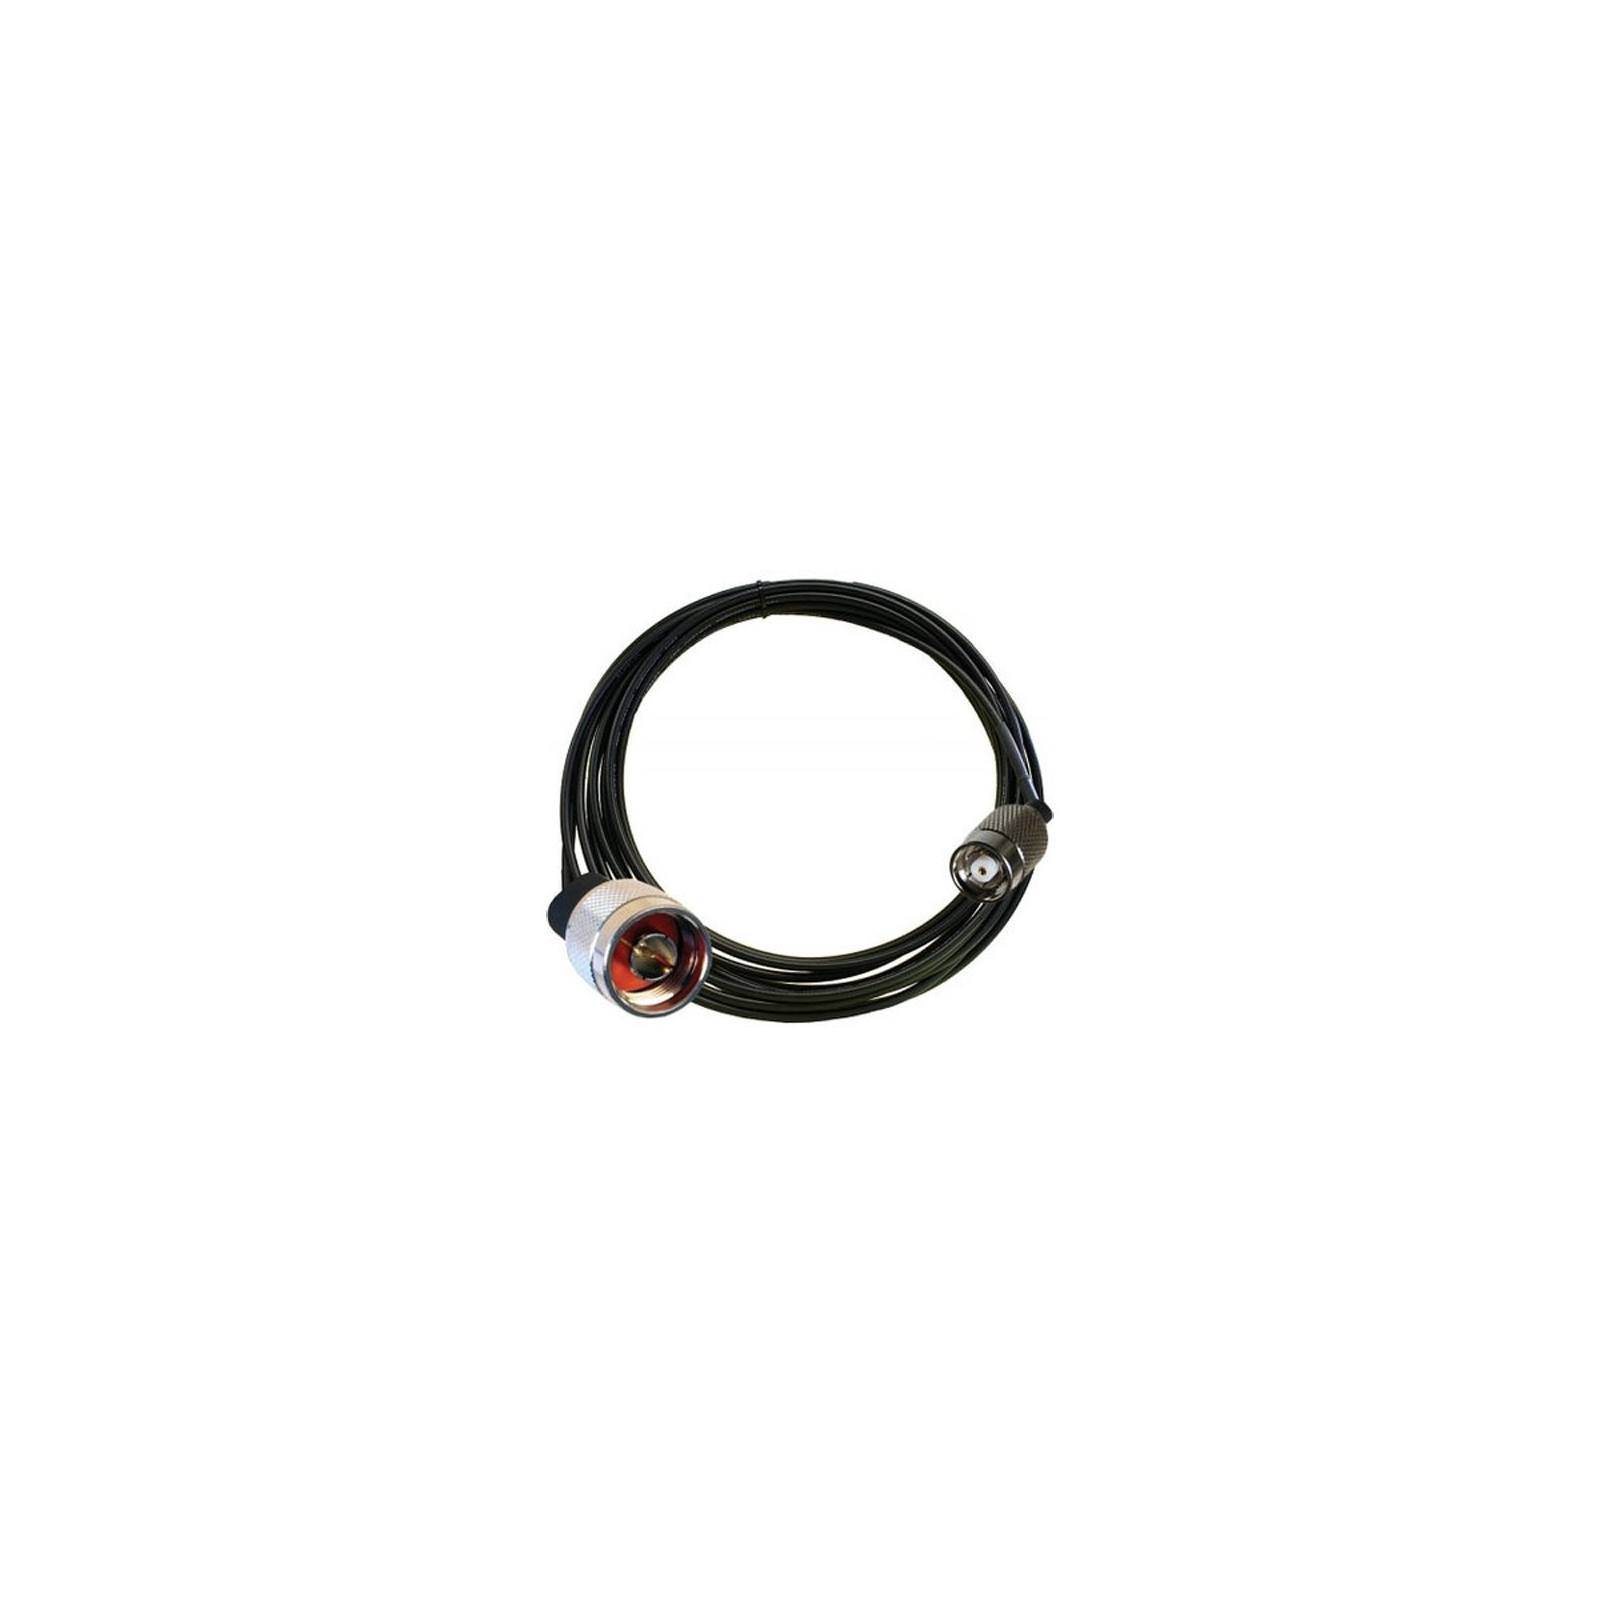 Интерфейсный кабель Symbol/Zebra для XR480 (CBLRD-1B4002400R)